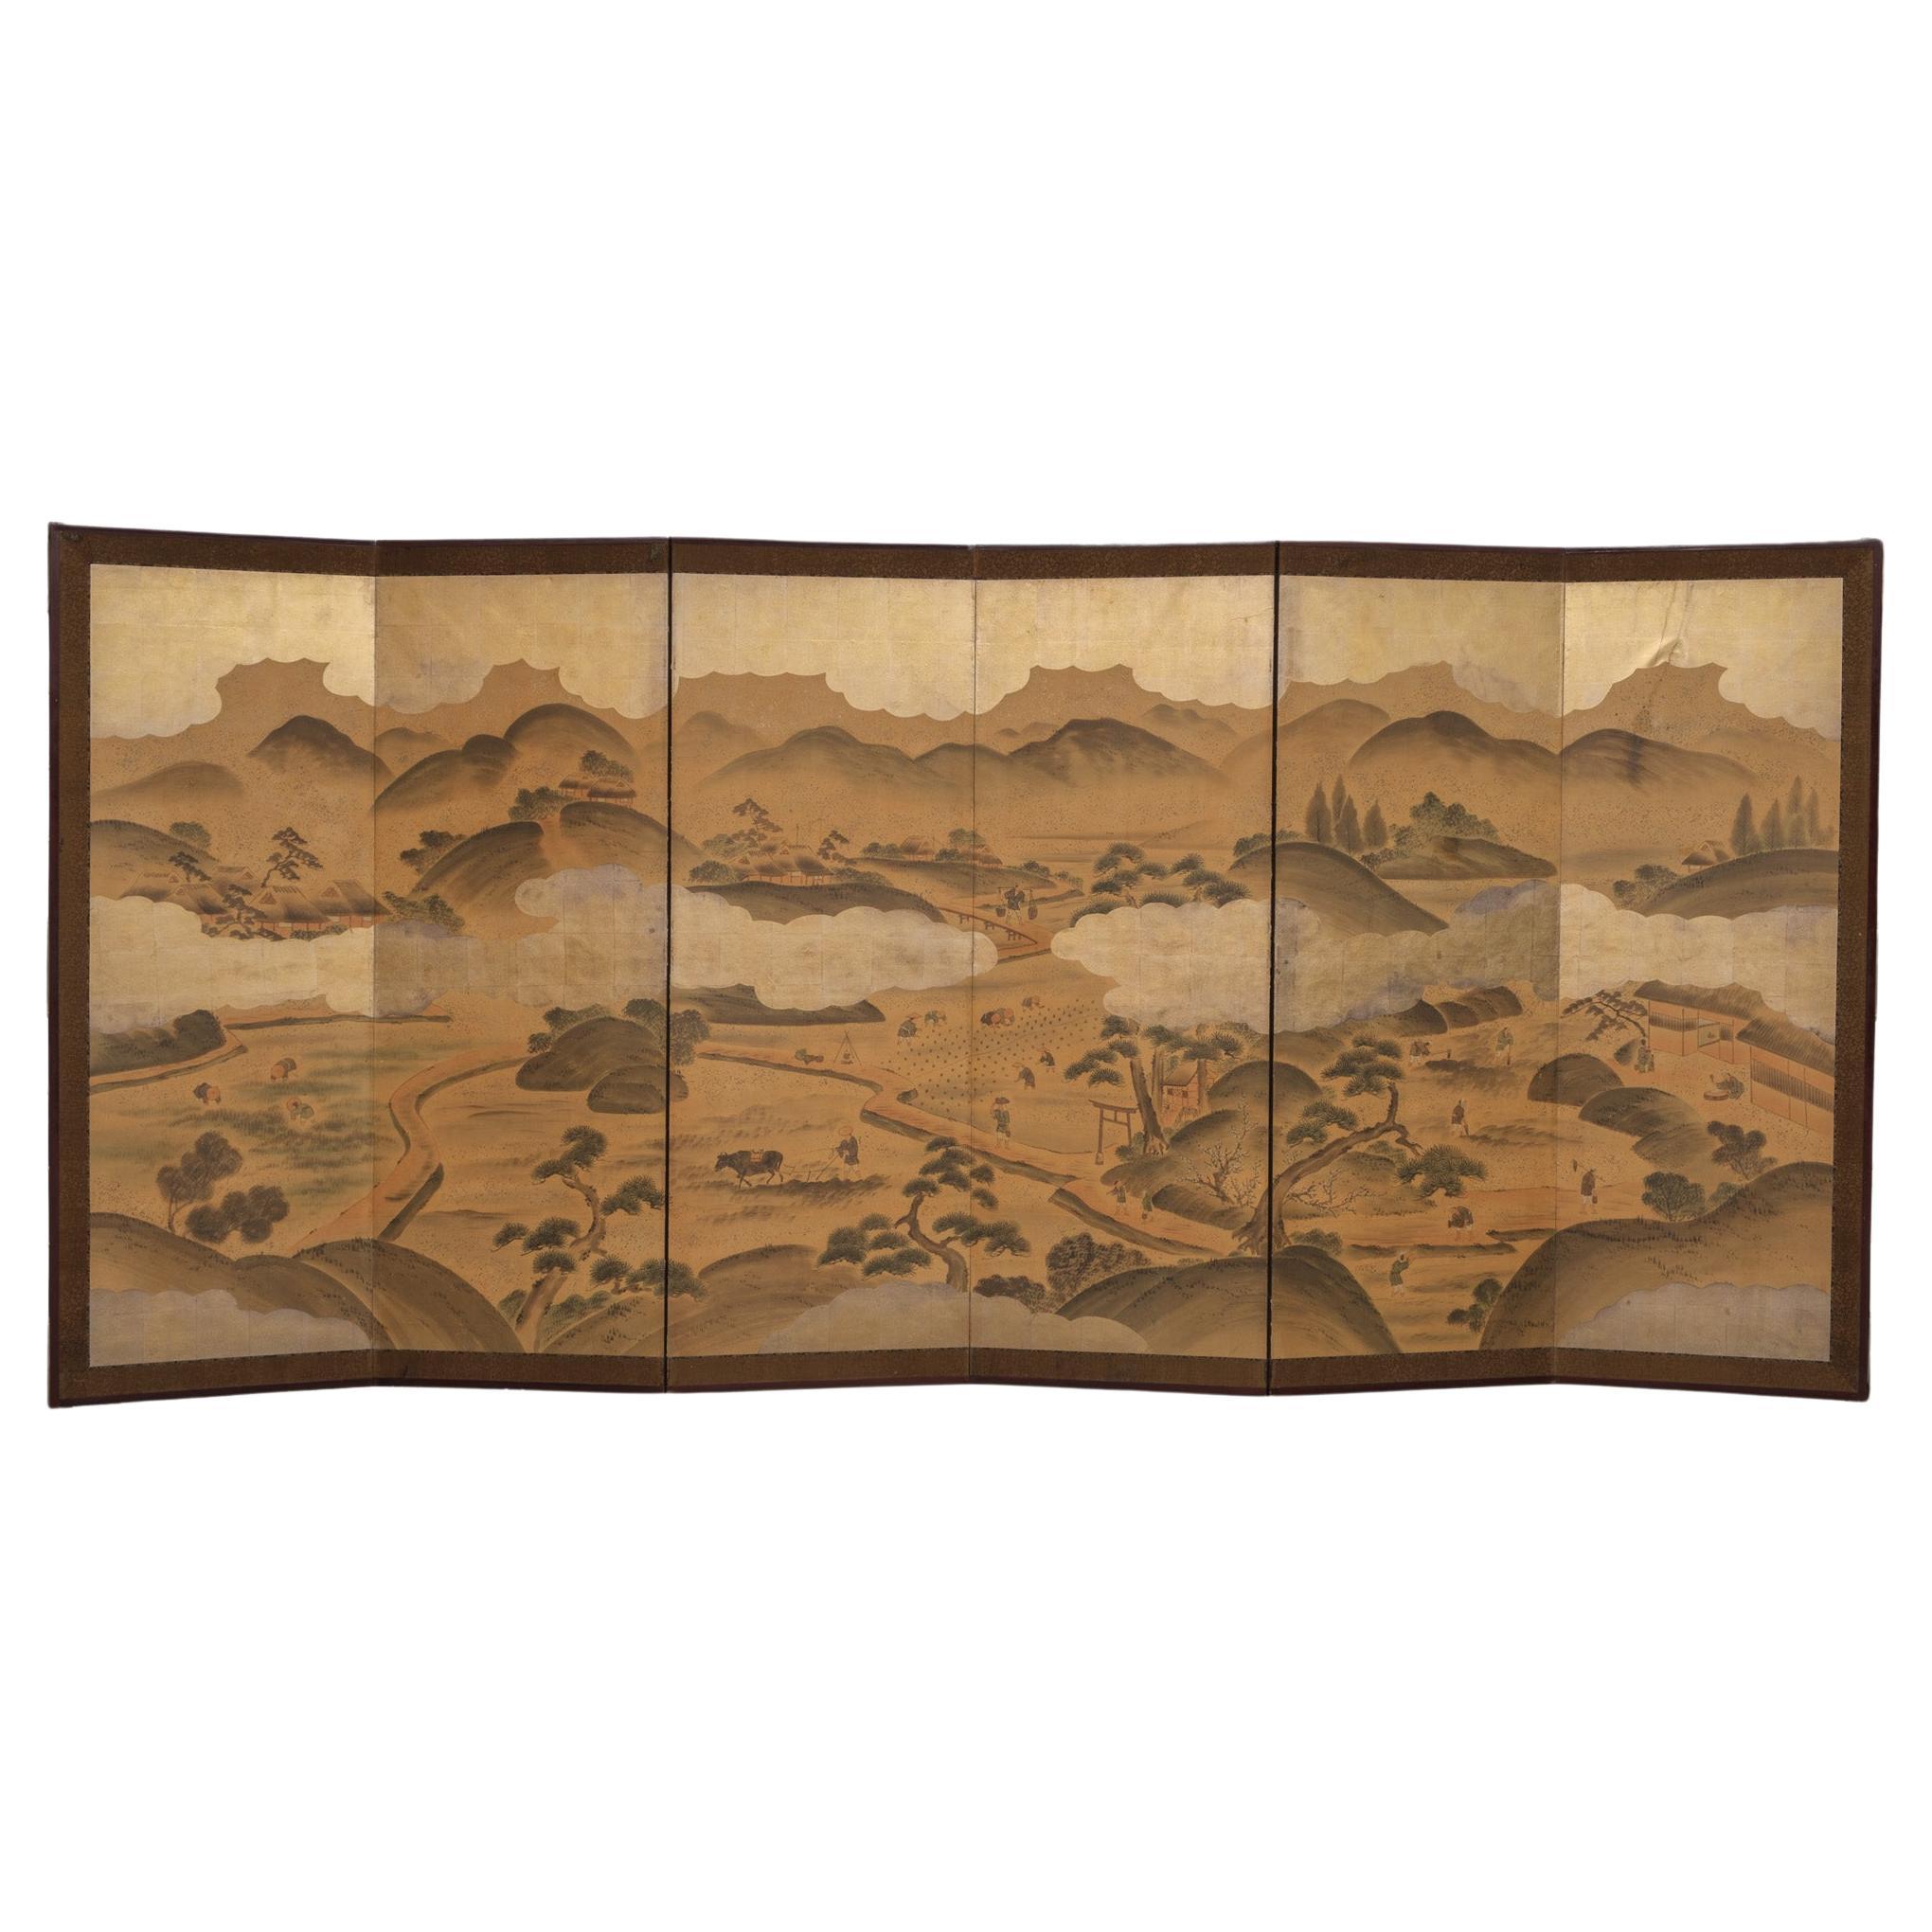 Grand byôbu japonais à 6 panneaux 屏風 (paravent) avec peinture de genre.